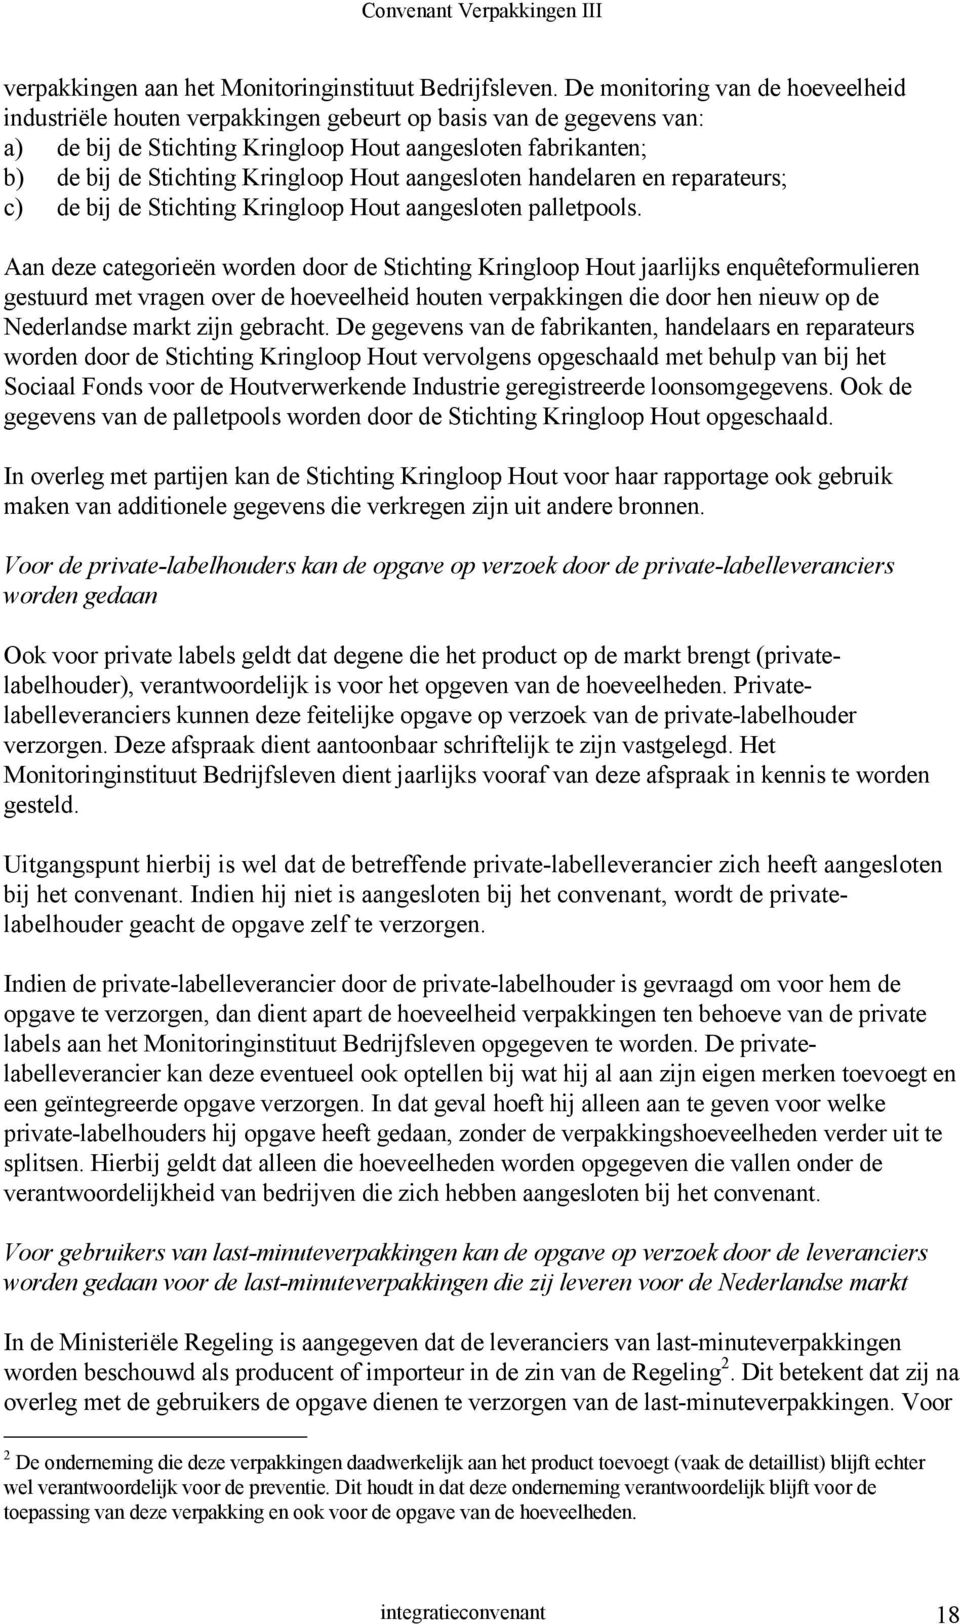 Hout aangesloten handelaren en reparateurs; c) de bij de Stichting Kringloop Hout aangesloten palletpools.